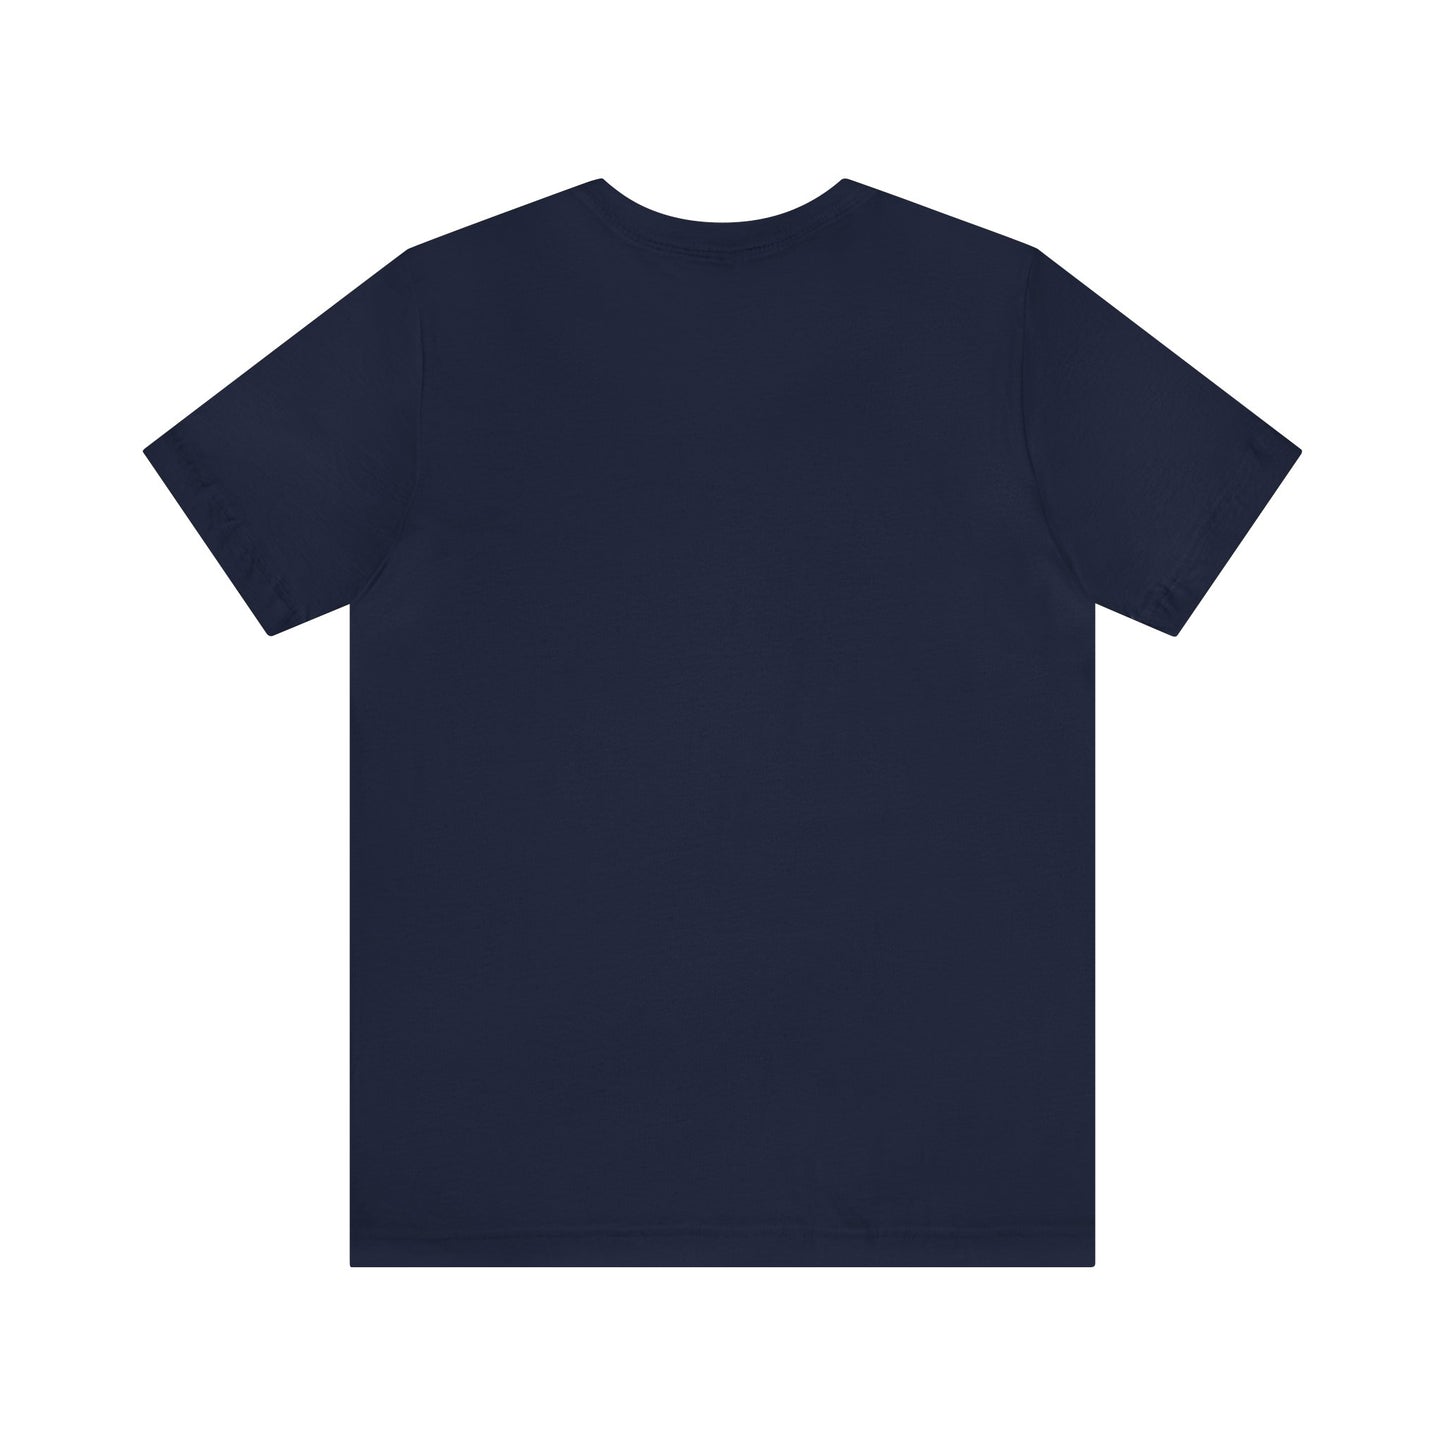 Conception de groupe de musique artisanale - Tee-shirt à manches courtes en jersey unisexe